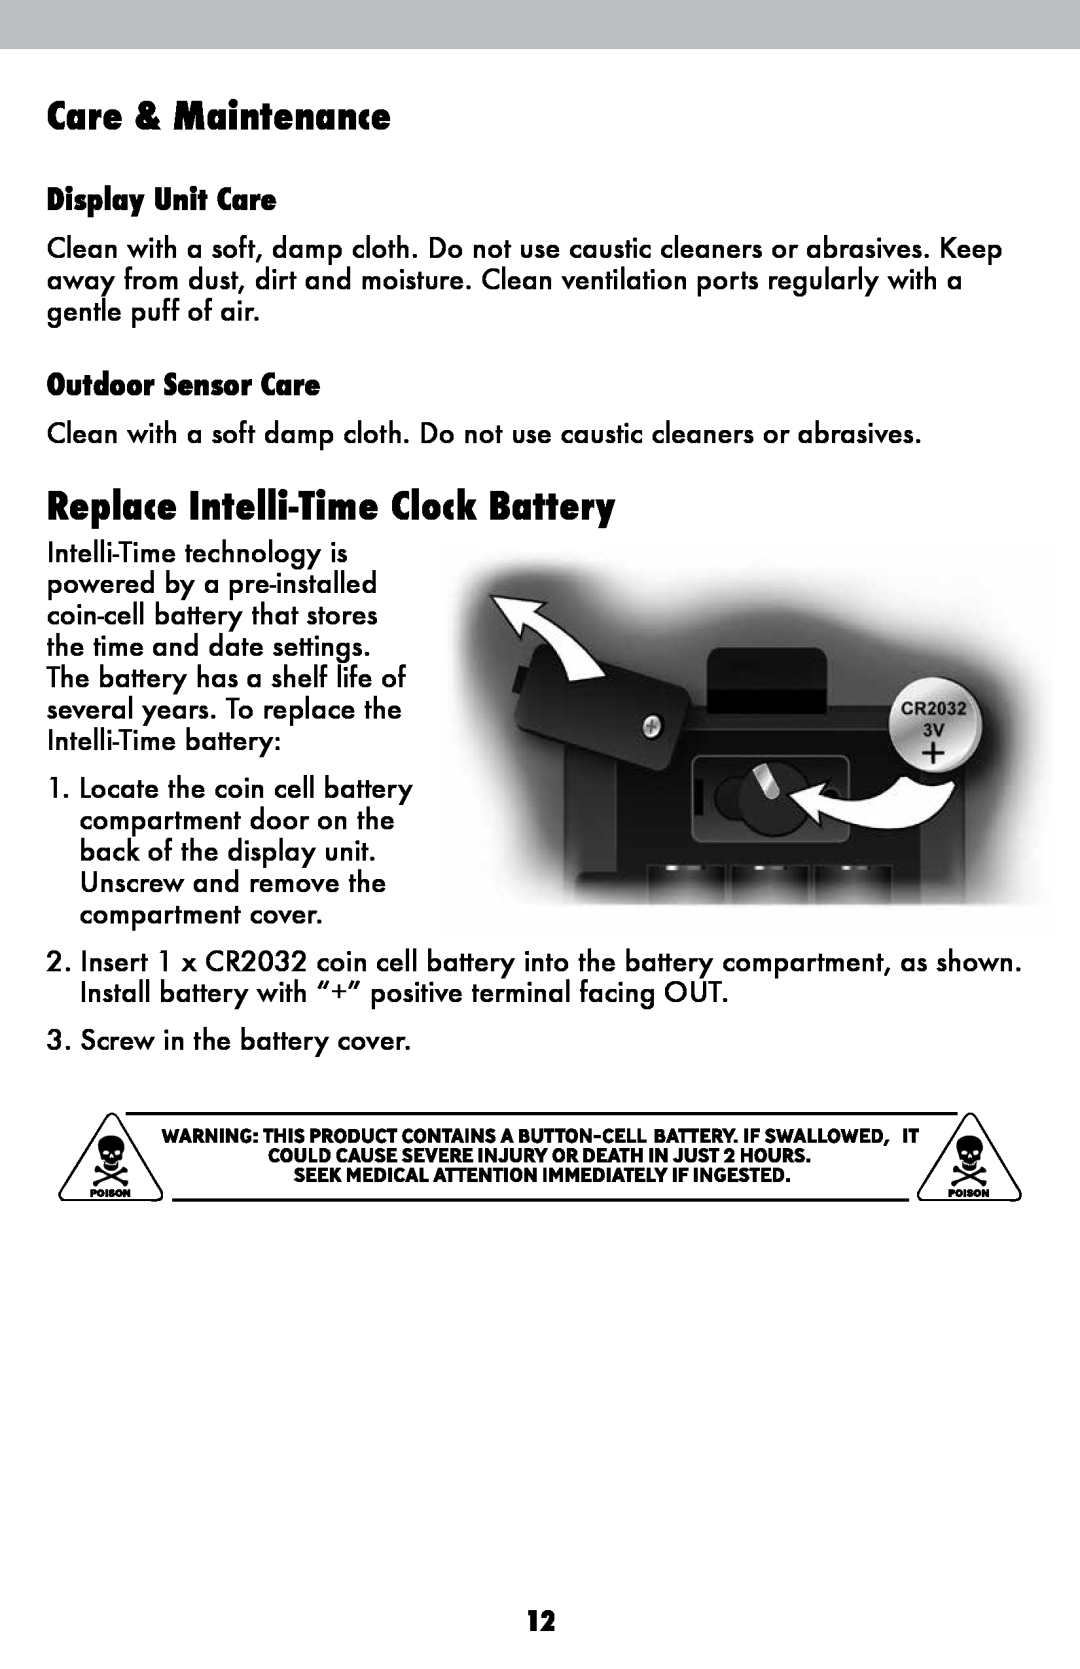 Acu-Rite 2008 Care & Maintenance, Replace Intelli-Time Clock Battery, Display Unit Care, Outdoor Sensor Care 